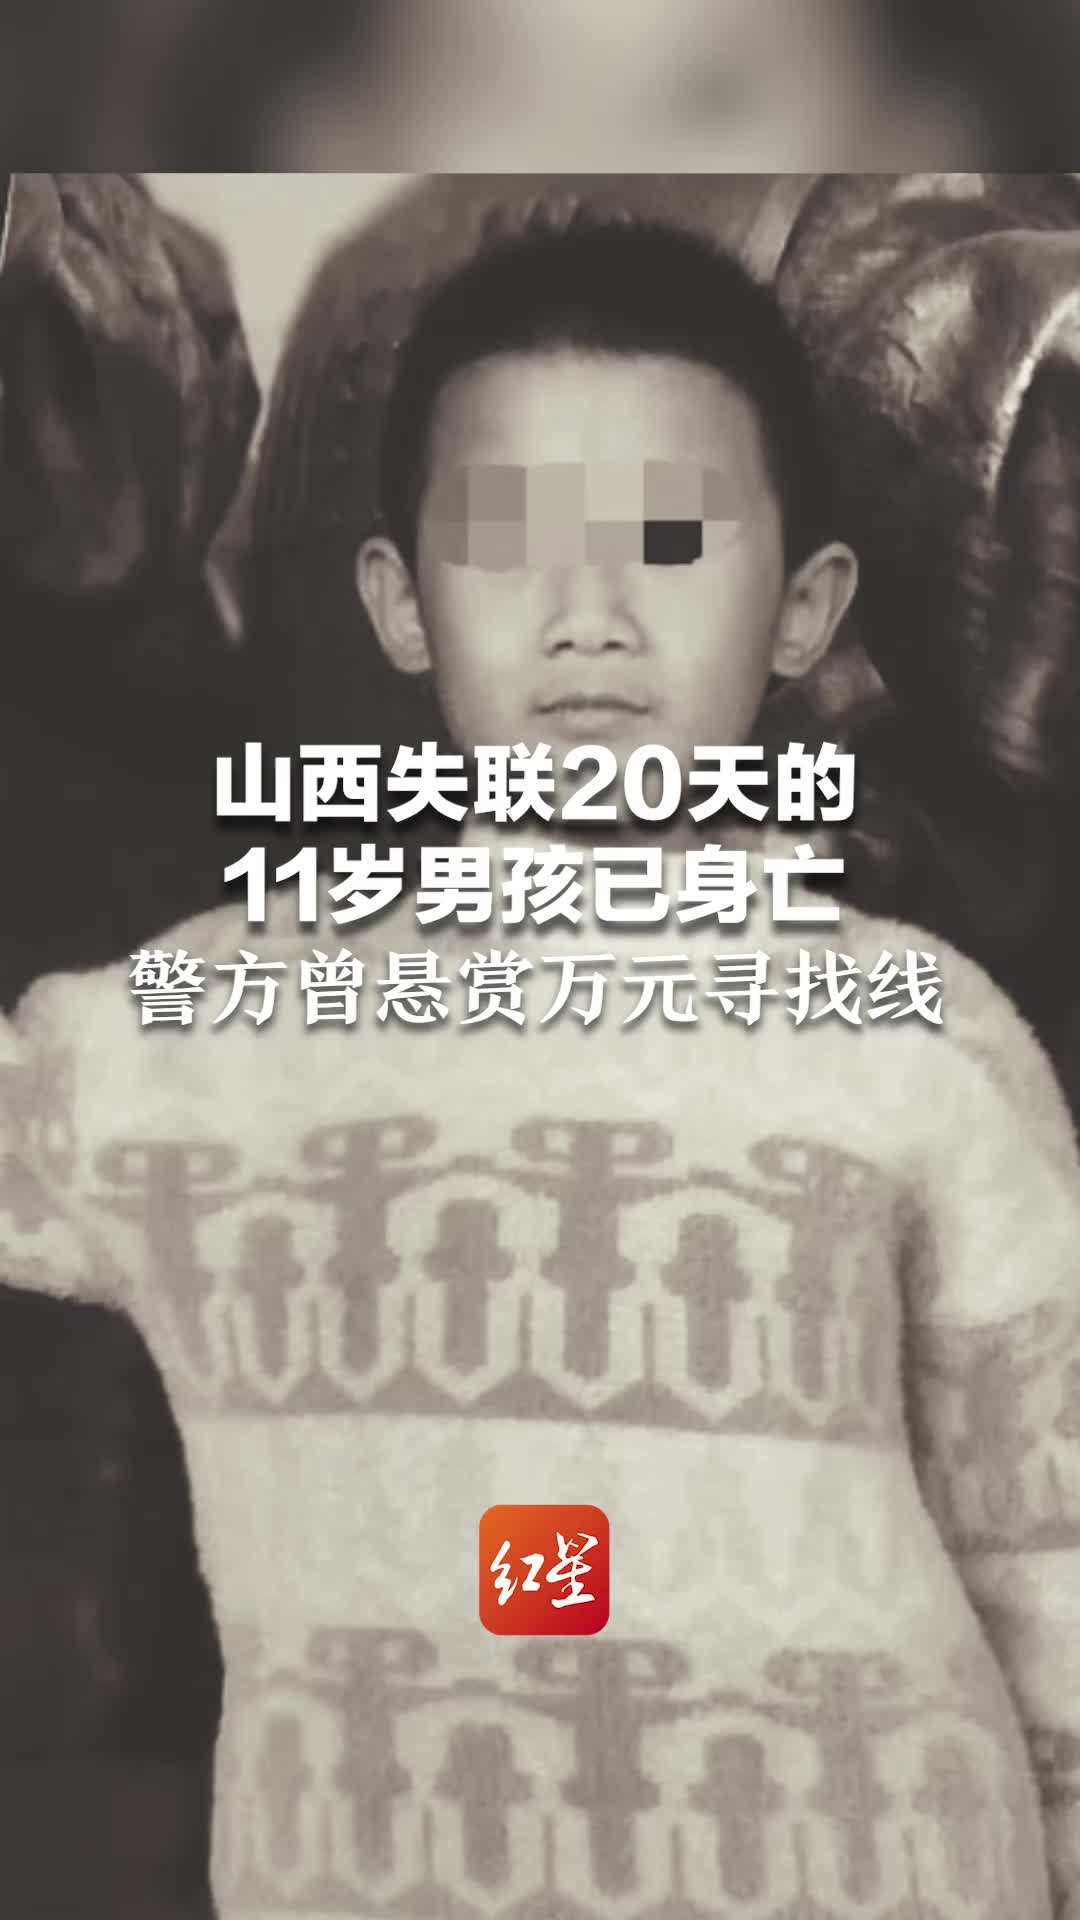 山西失联20天的11岁男孩已身亡 警方曾悬赏万元寻找线索